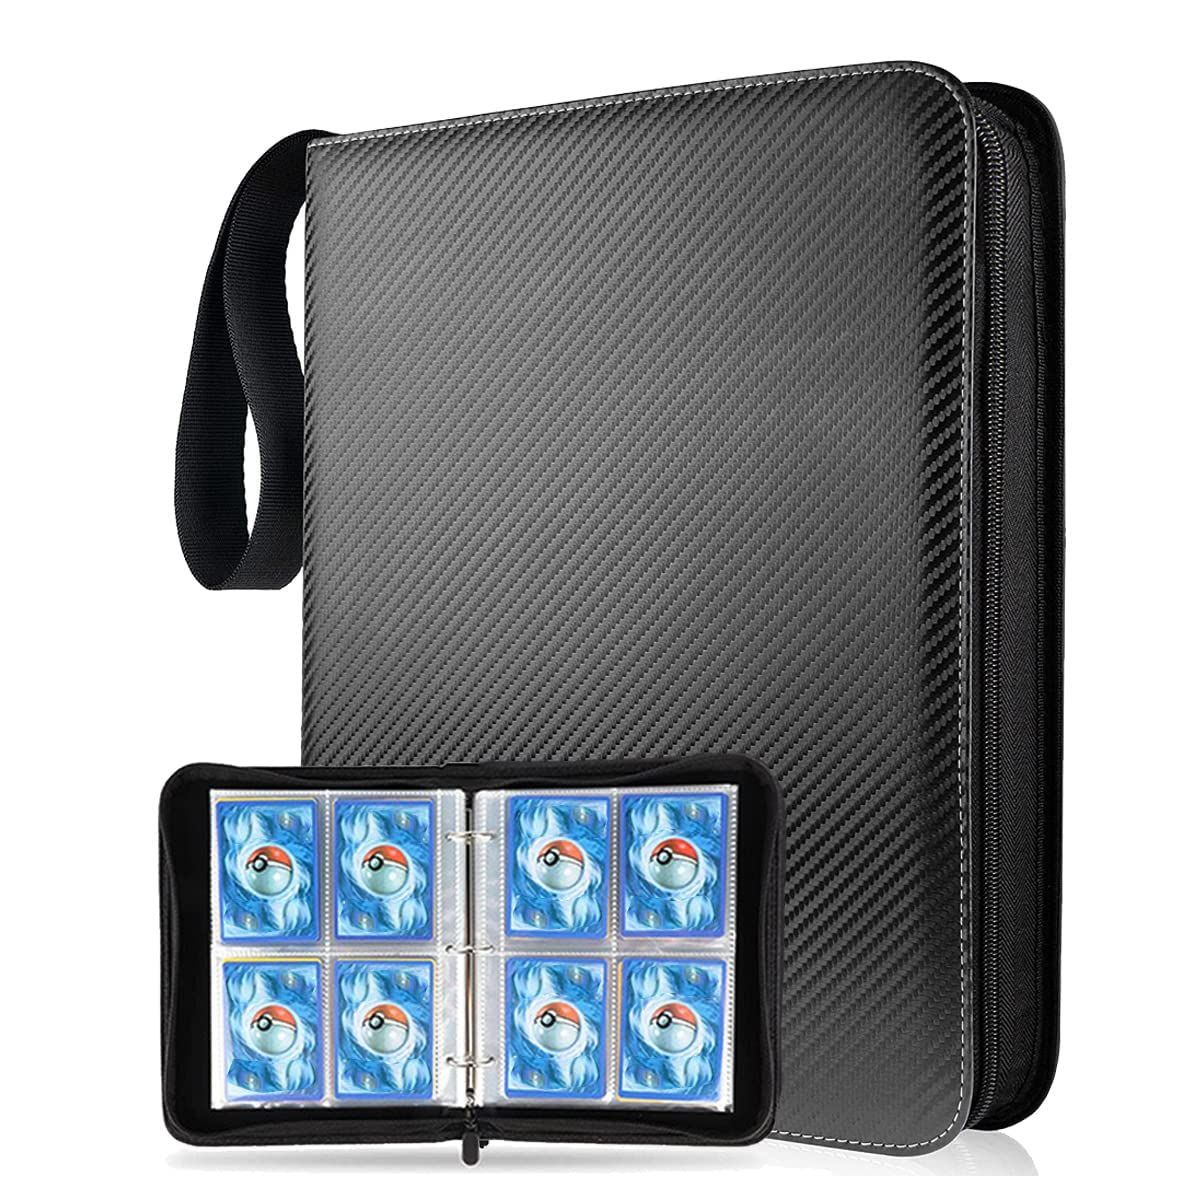 人気の Smilerain カードファイル 4ポケット カードフォルダー 400枚収納 4108.80円 その他